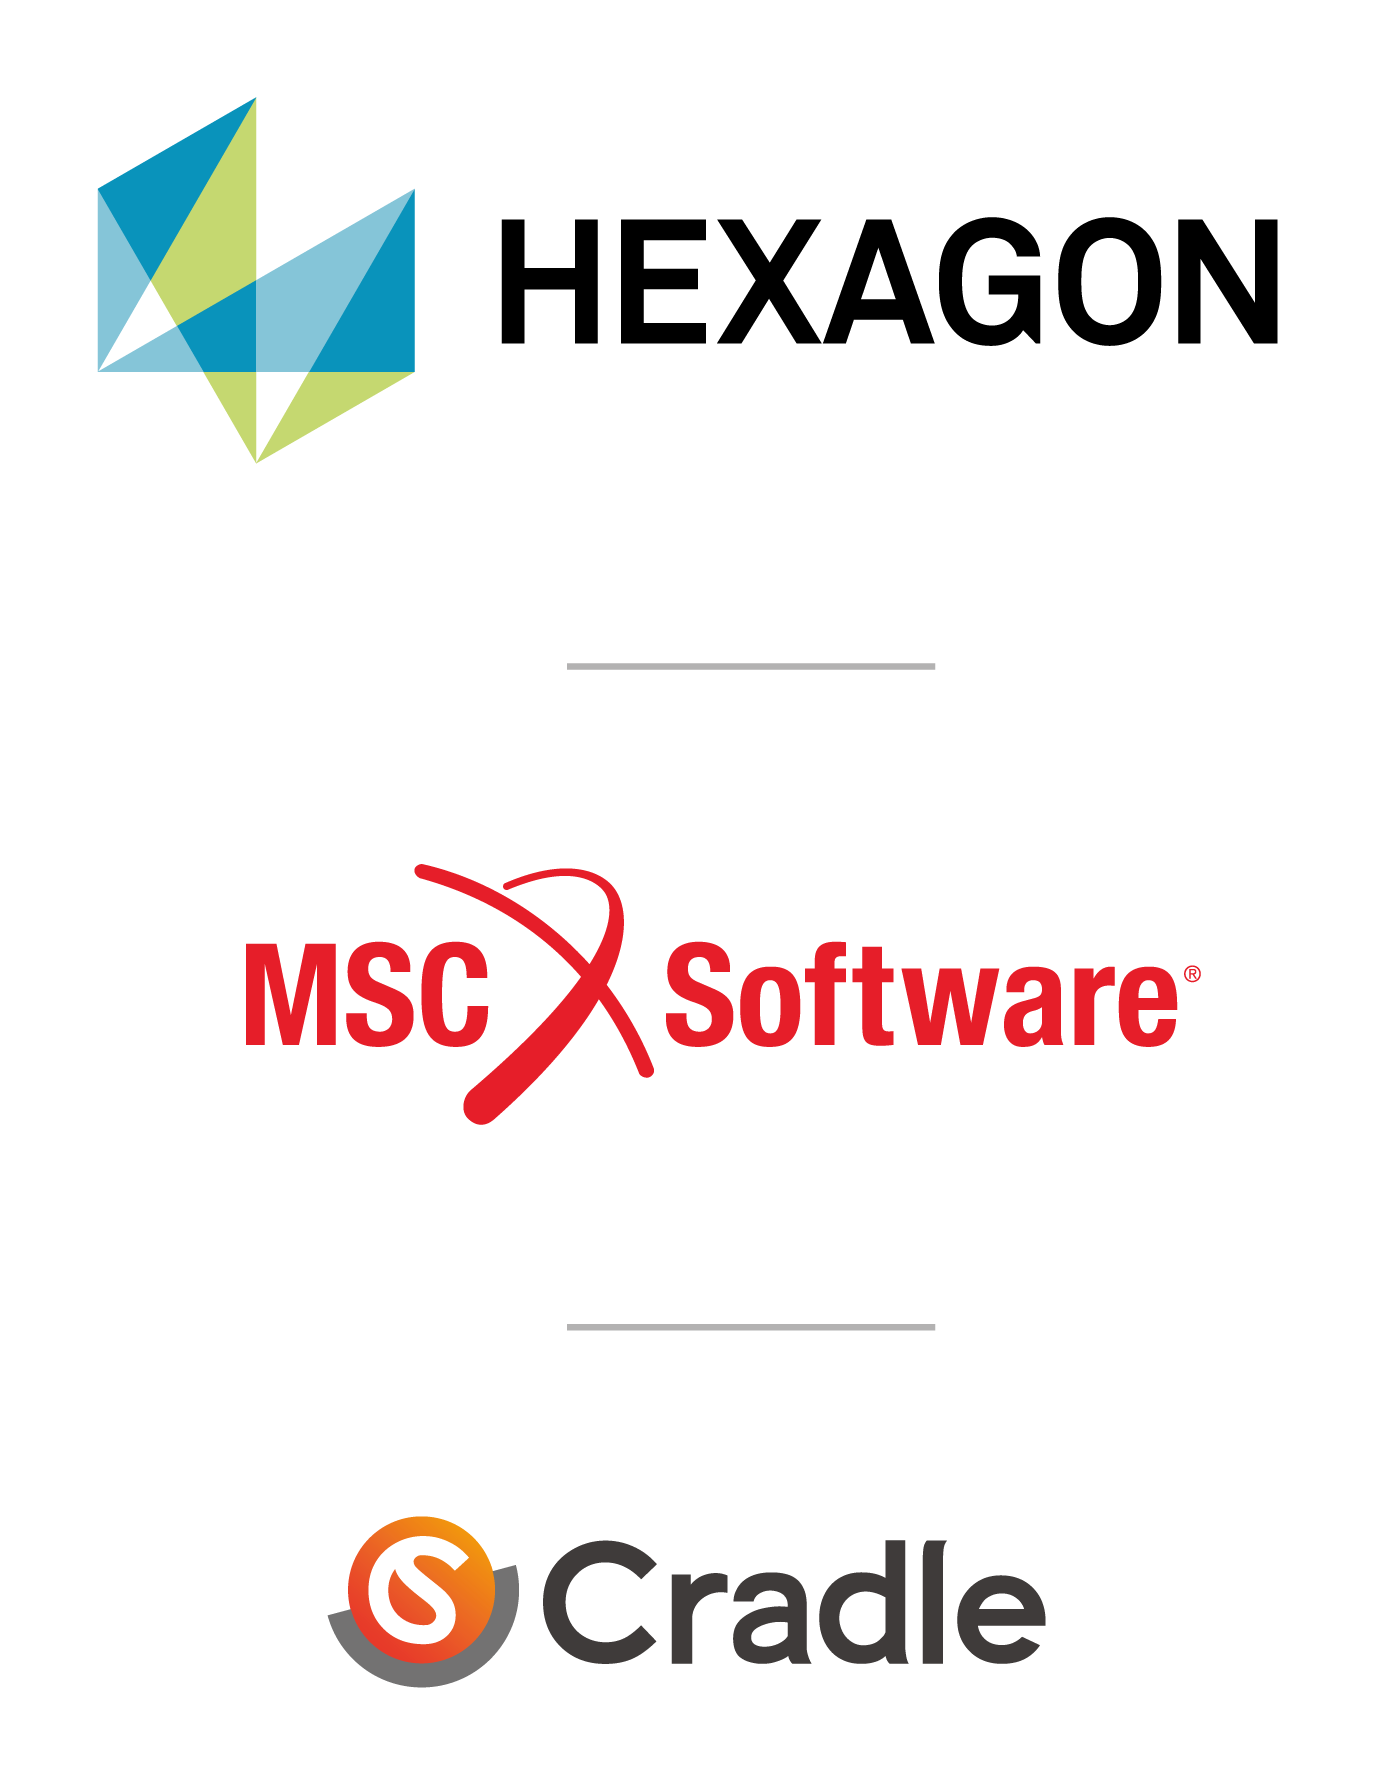 Hexagon | MSC Software | Cradle